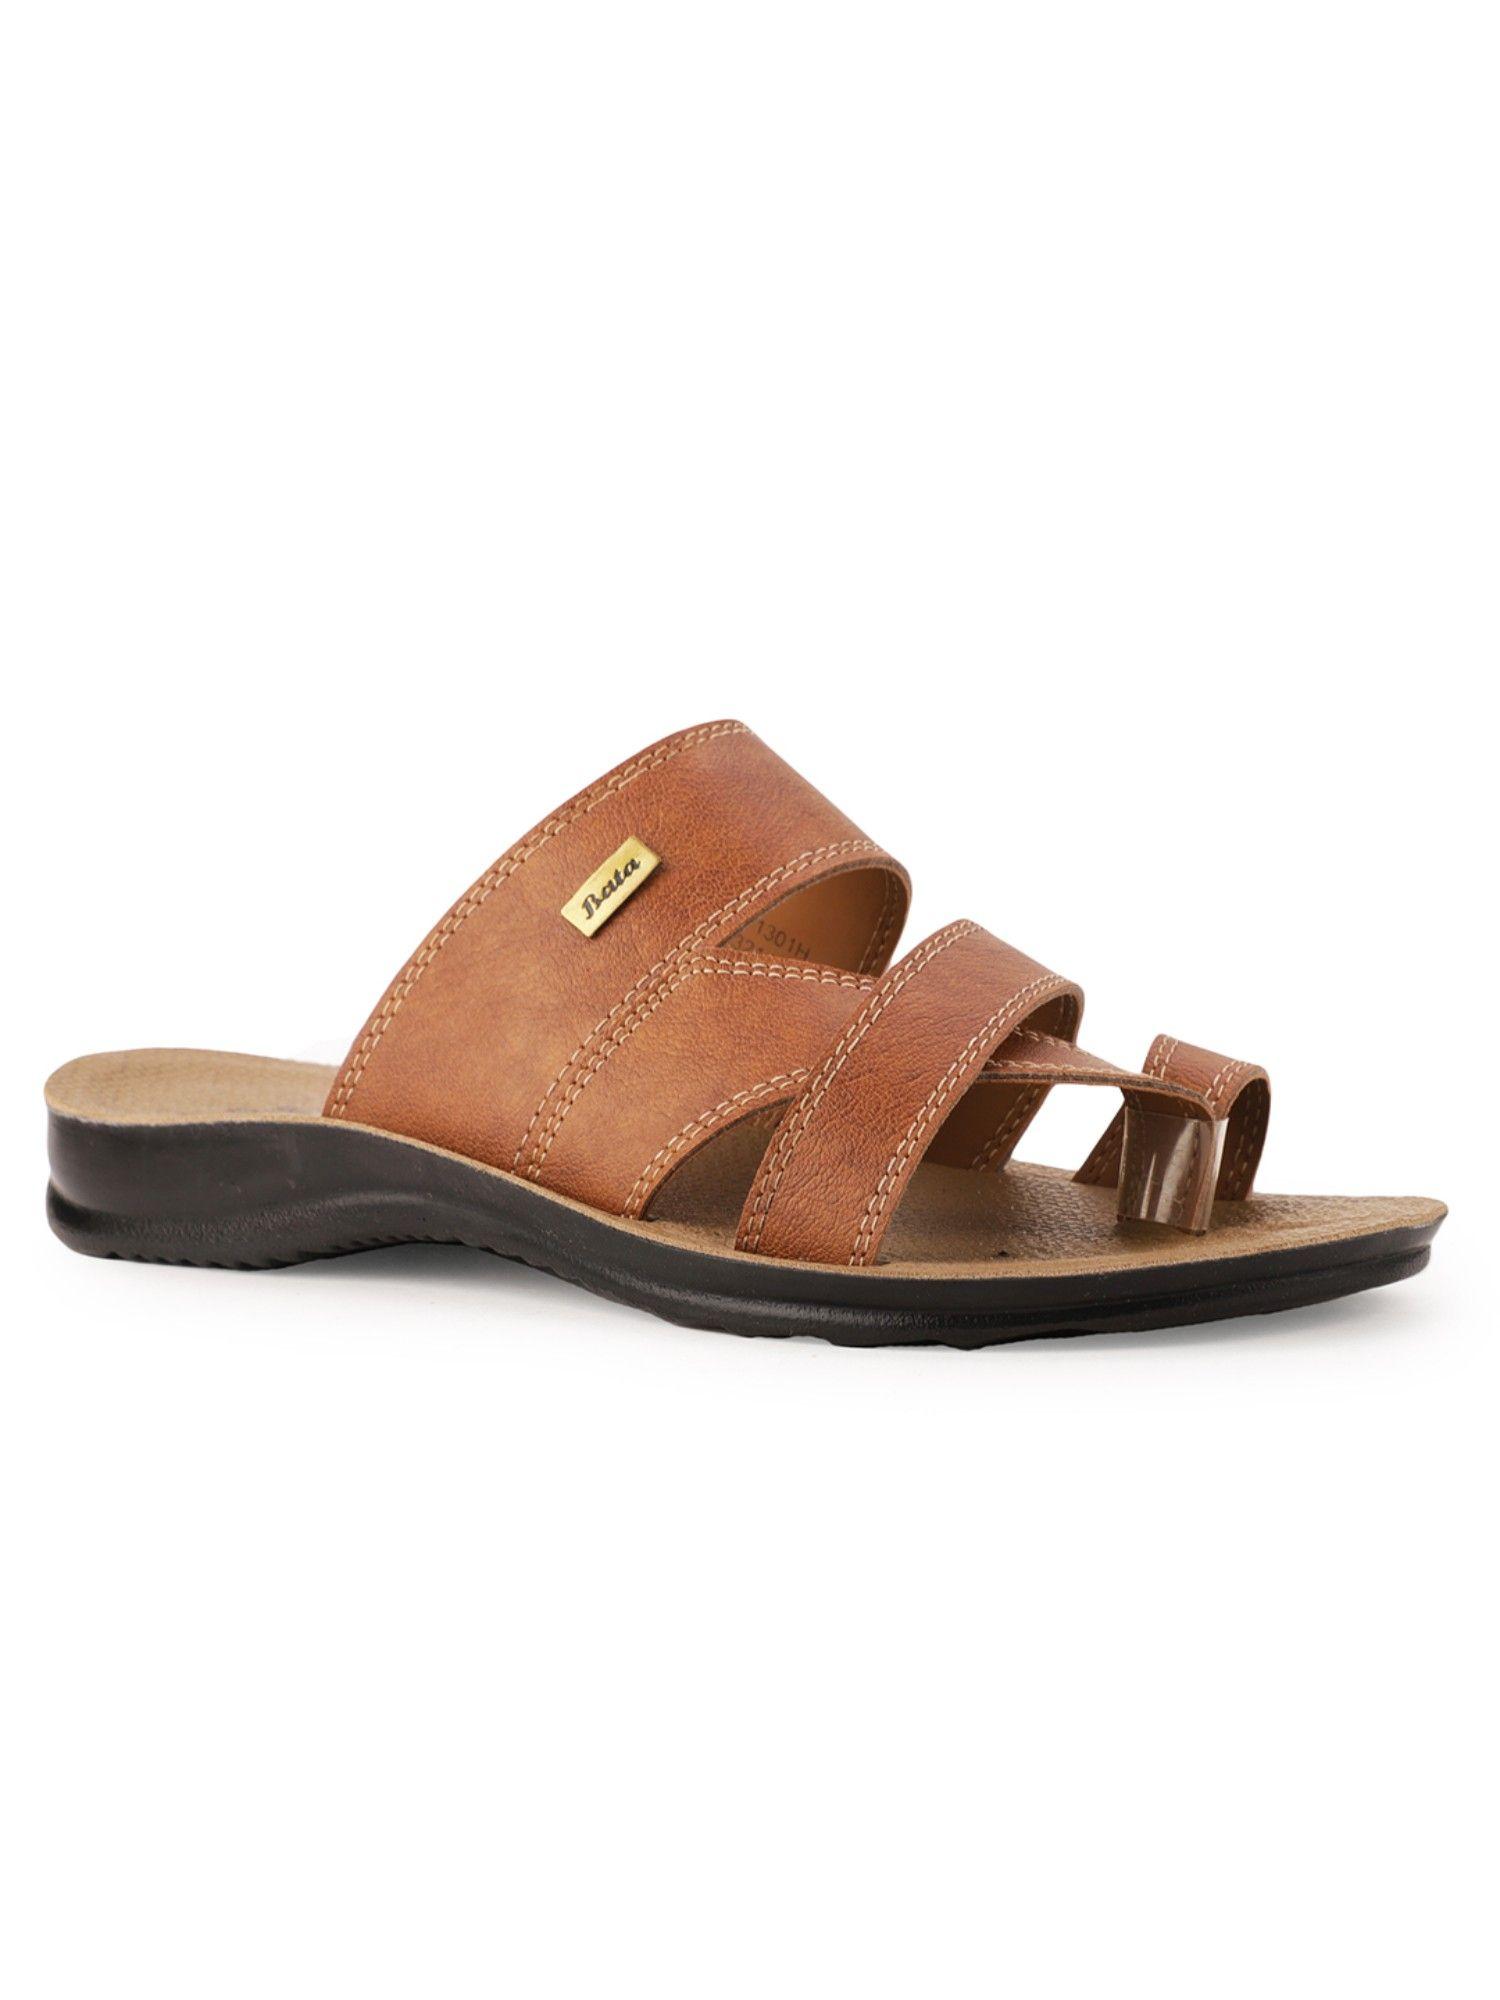 Solid Tan Sandals